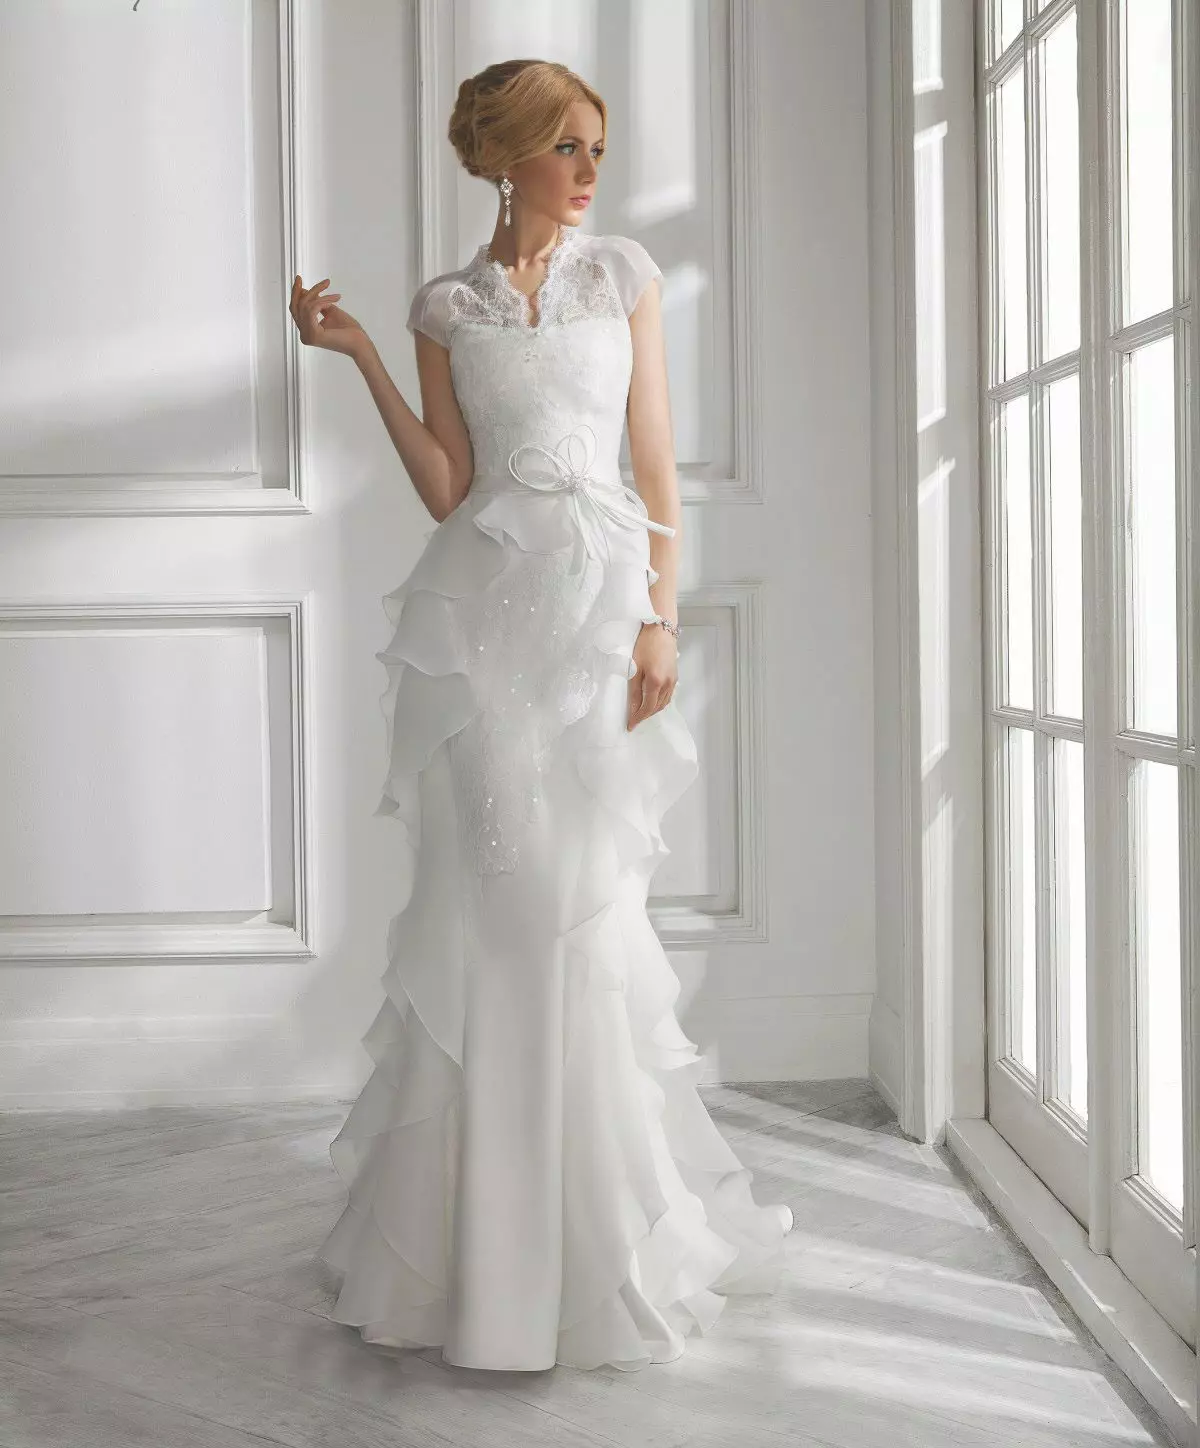 Затворена свадба фустан од дама бела